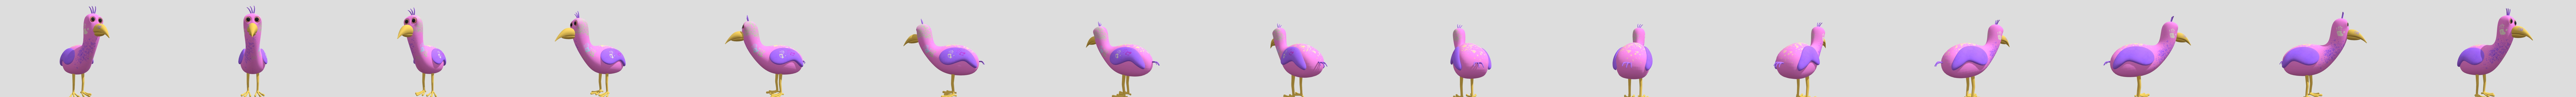 Opila bird - Download Free 3D model by Gavin bou (@GavinBou) [d39b5f0]